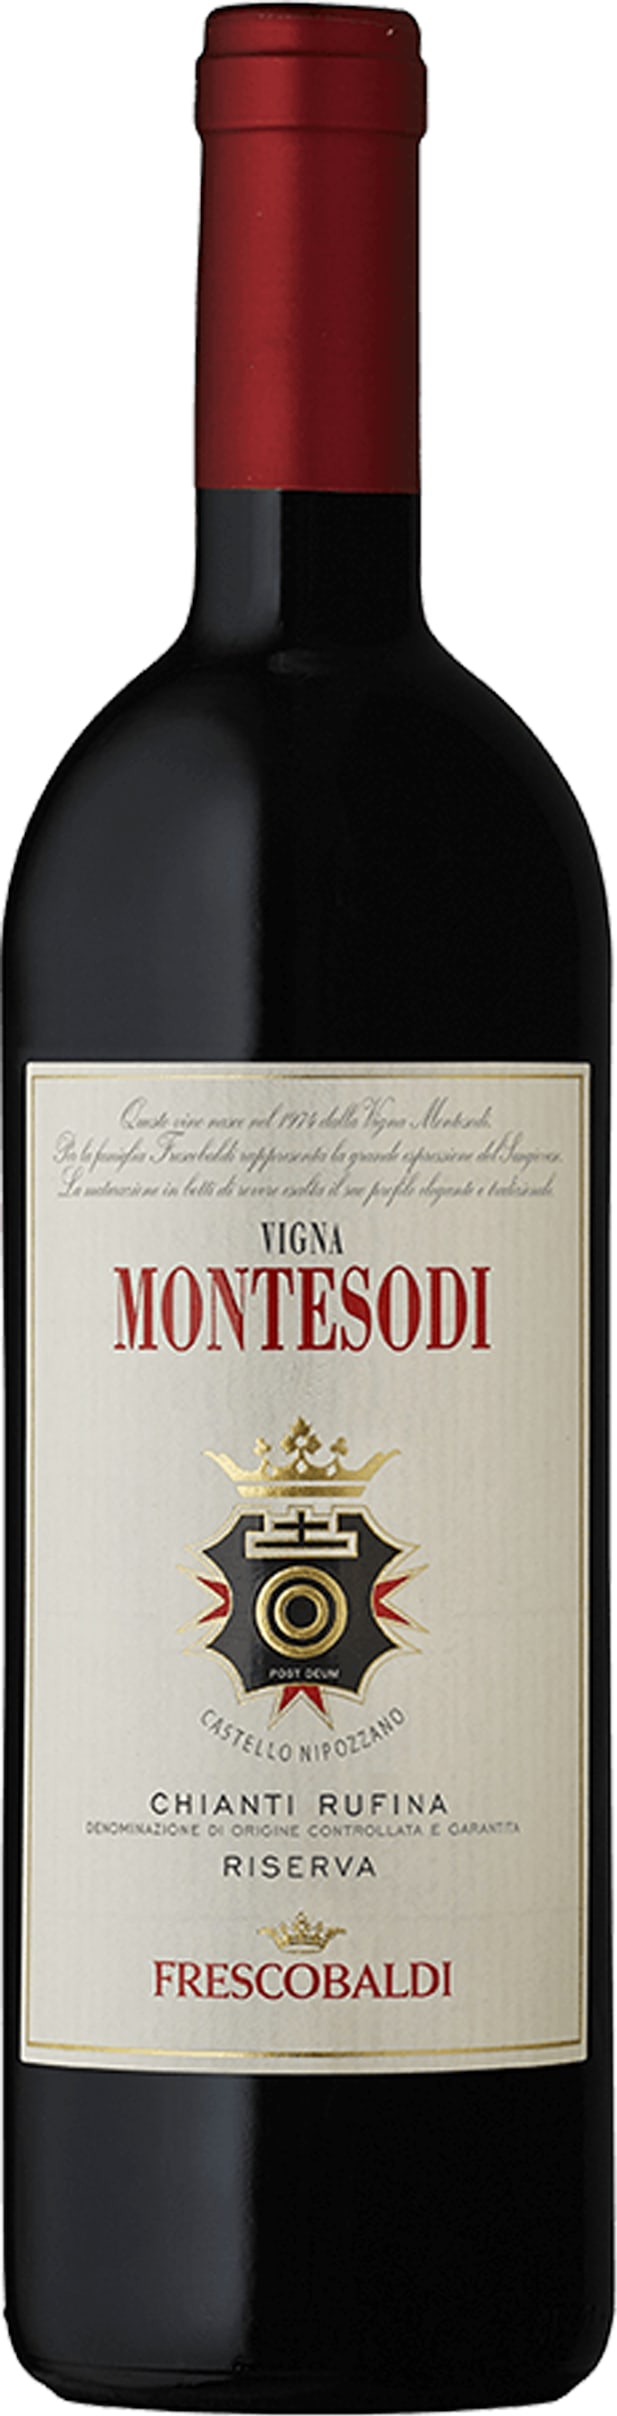 Frescobaldi Montesodi 2011 75cl - Buy Frescobaldi Wines from GREAT WINES DIRECT wine shop